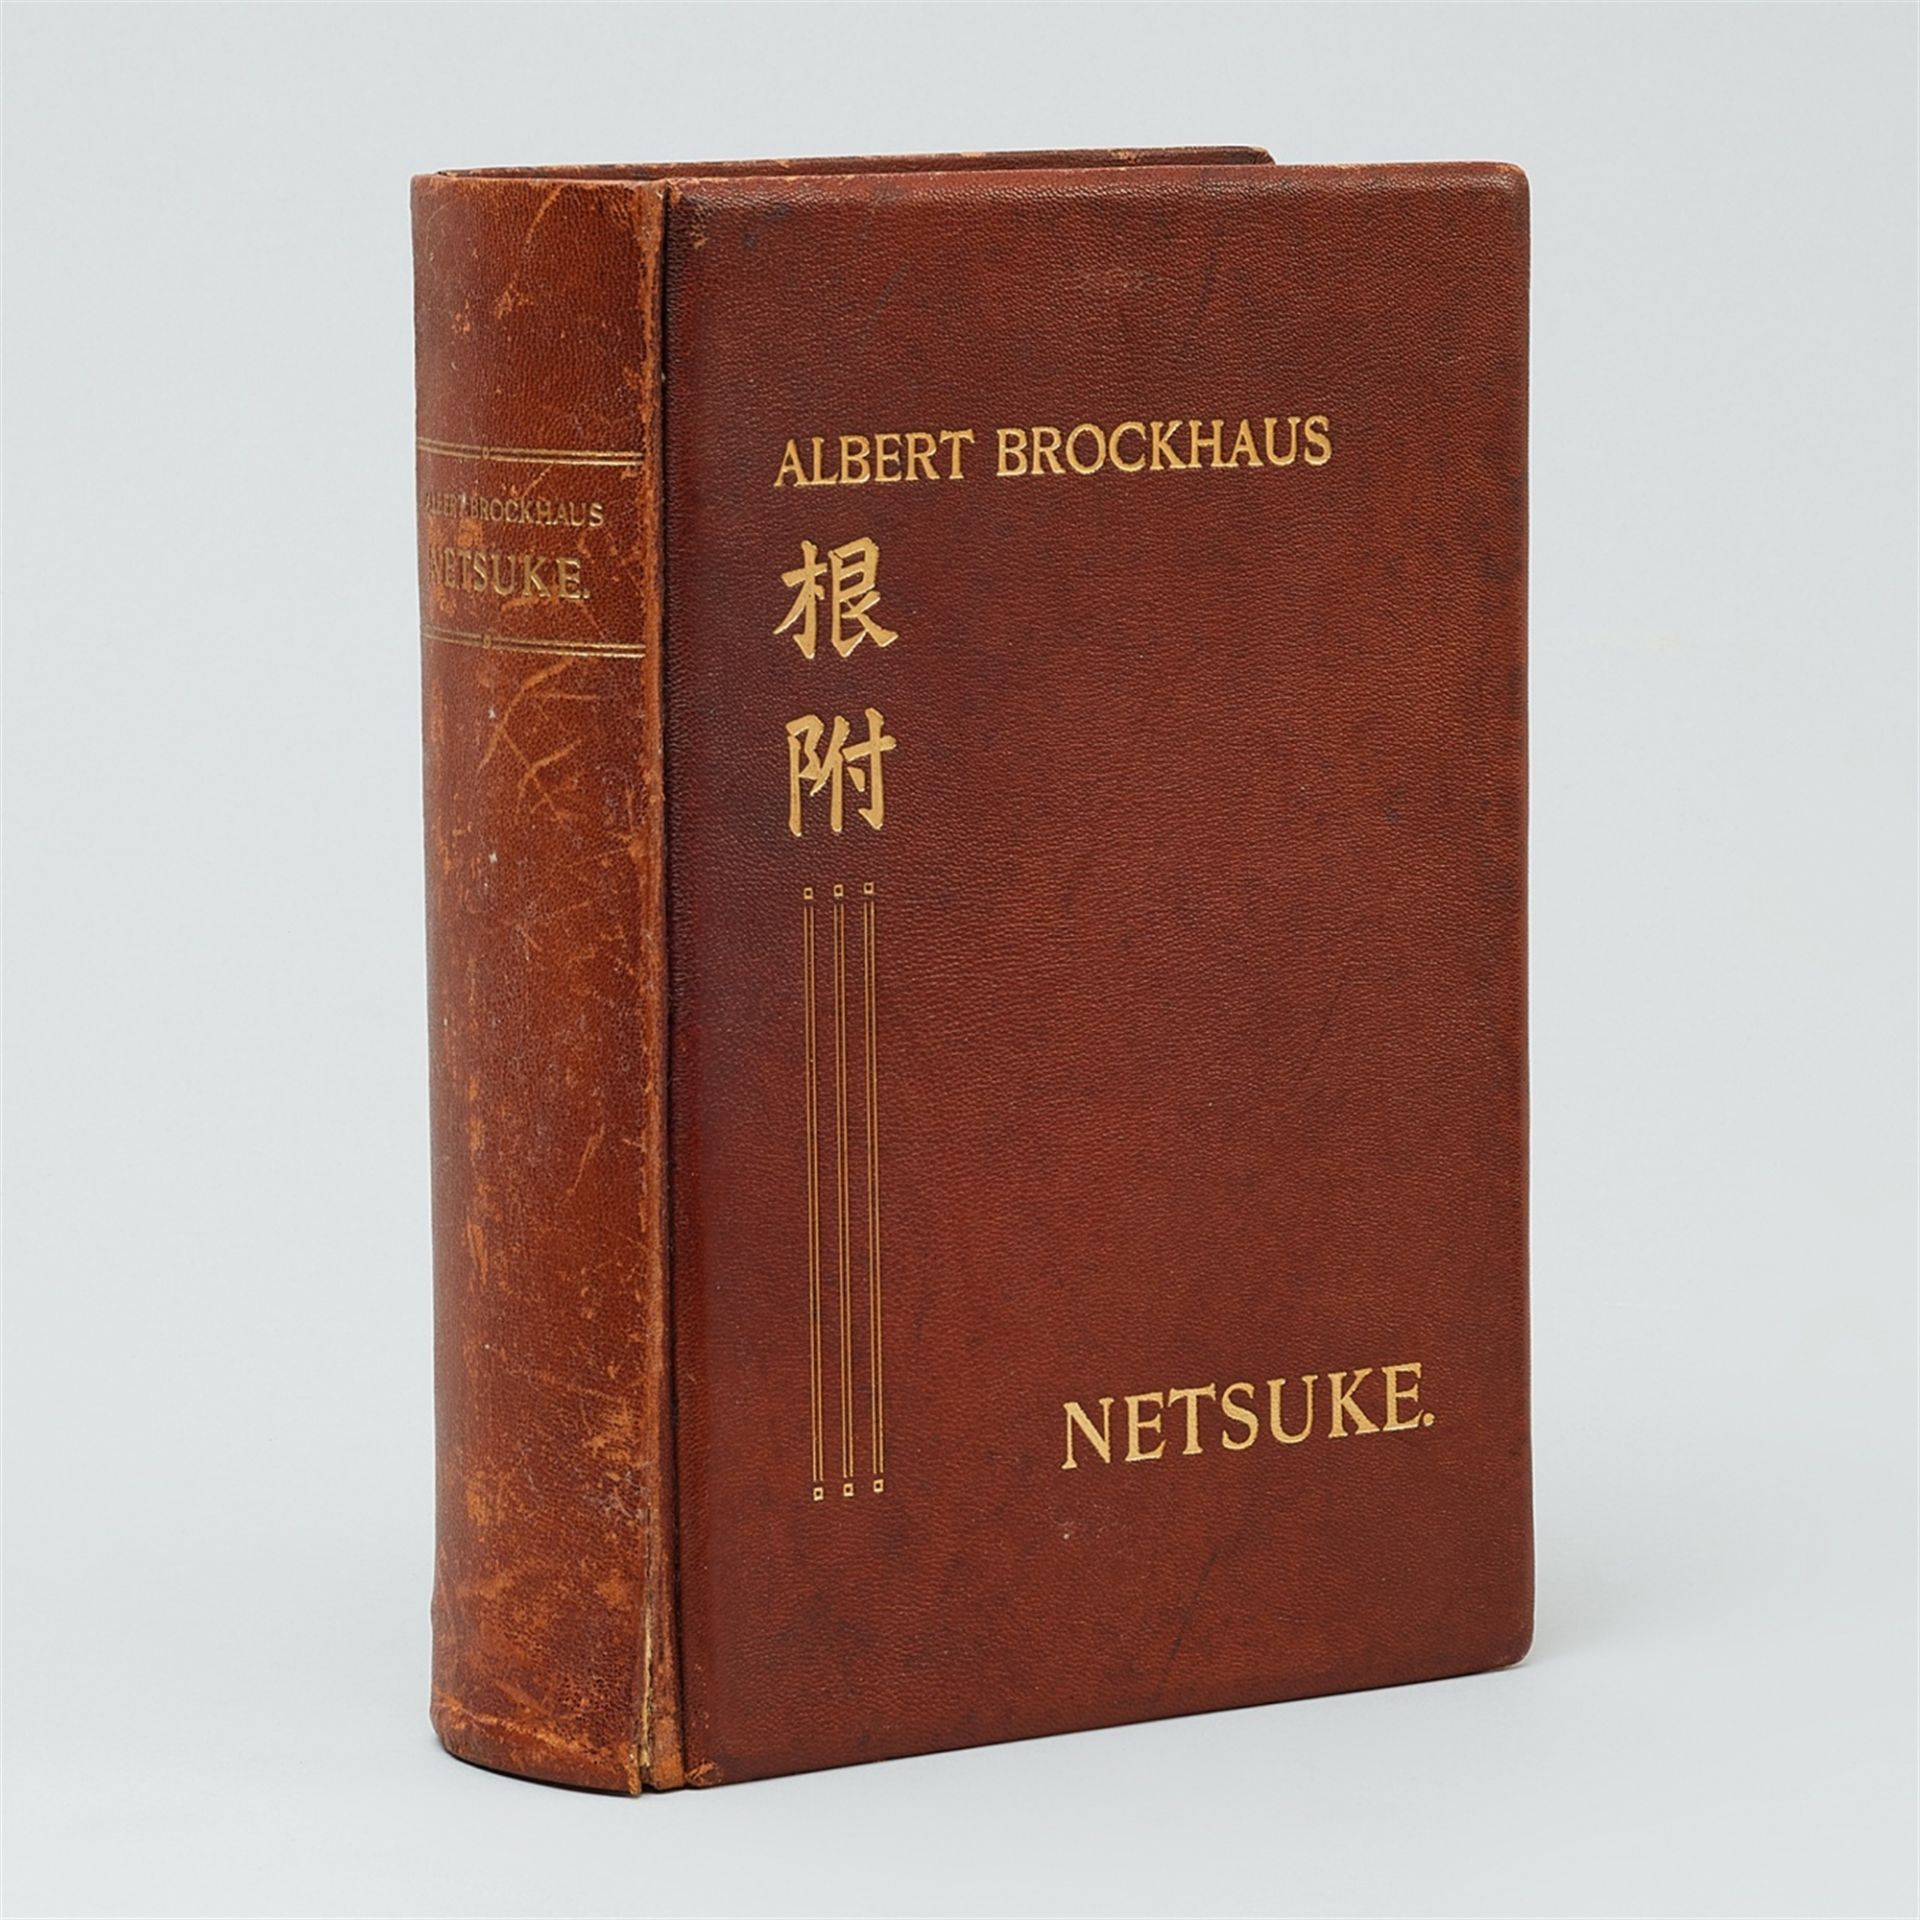 Albert Brockhaus. Netsuke